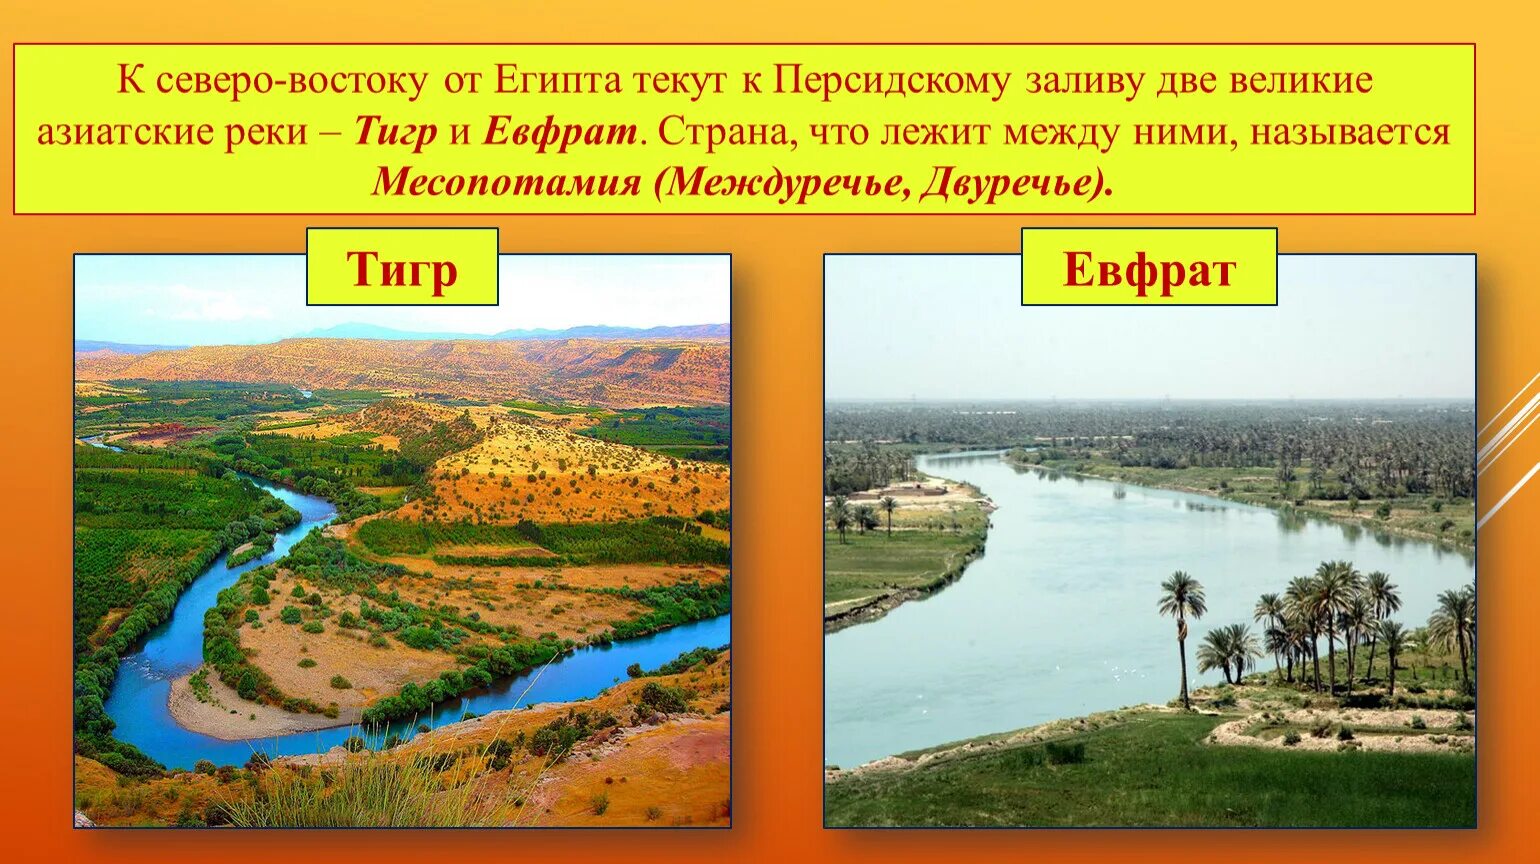 Река между тигром и евфратом. Устье рек тигра и Евфрата. Река тигр Месопотамия. Реки Месопотамии Ефрат.